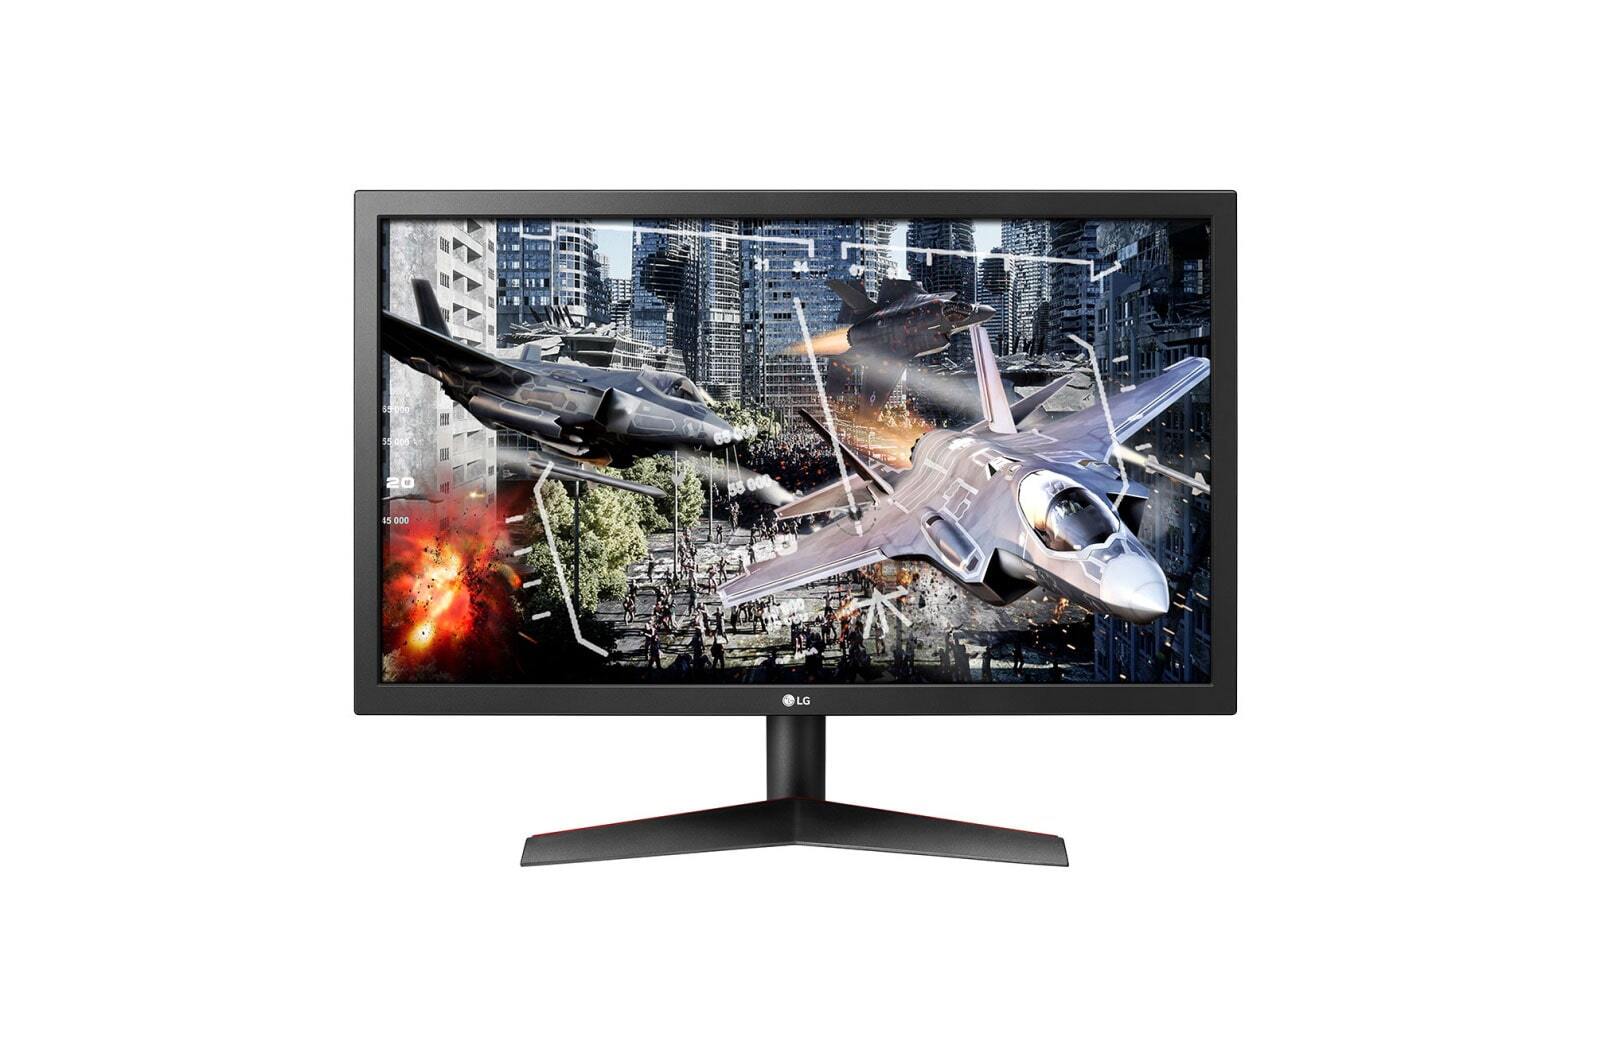 CommericalDisplayWorks.com LG 24GL65B-B 24 inch UltraGear® Full HD Gaming Monitor with Radeon FreeSync®